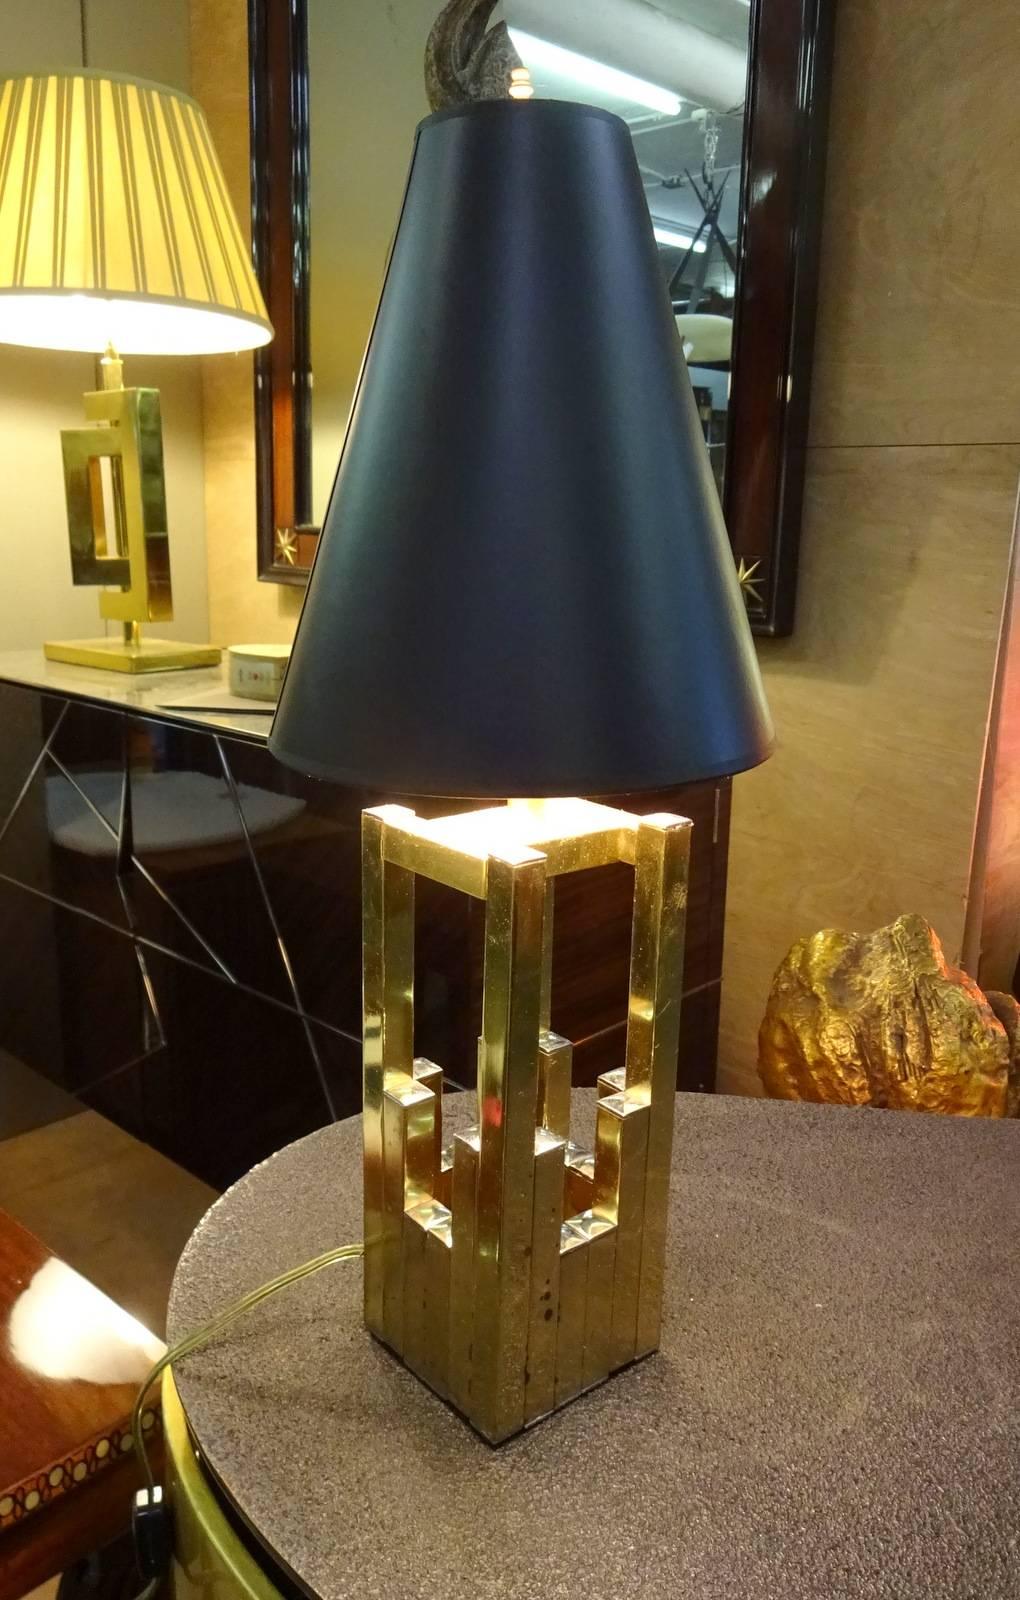 Lampe de table recâblée des années 1970, éditée par Lumica
Taille de la base 4